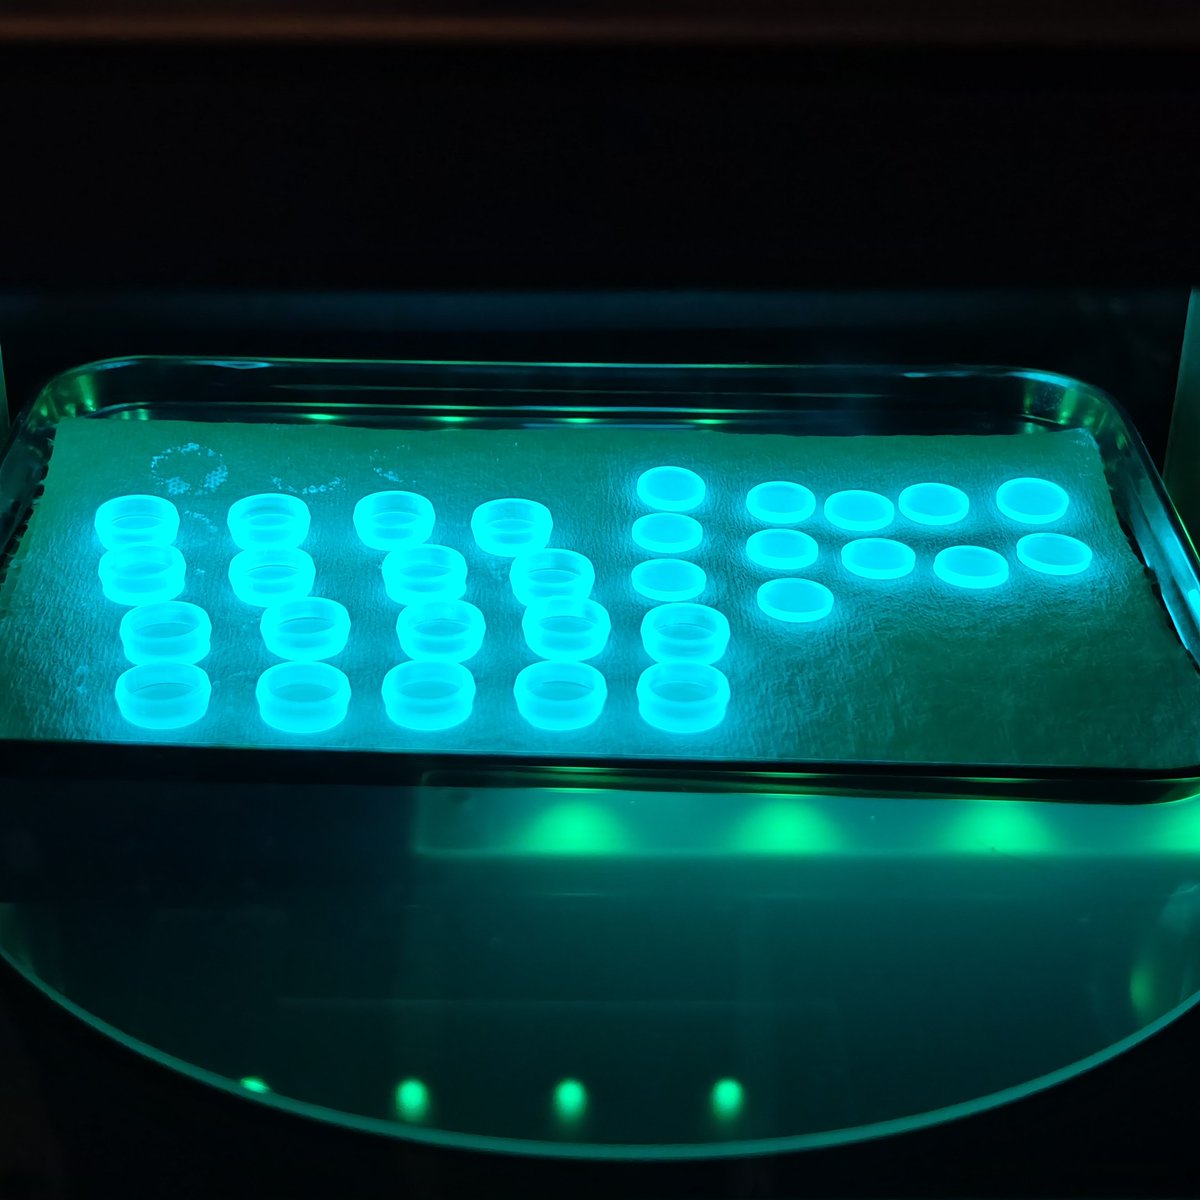 3Dプリンターの2次硬化という作業です🛸
マトリックス感のある青緑の光で焼き付けます✨
いい感じに制作できるようになってきました😊